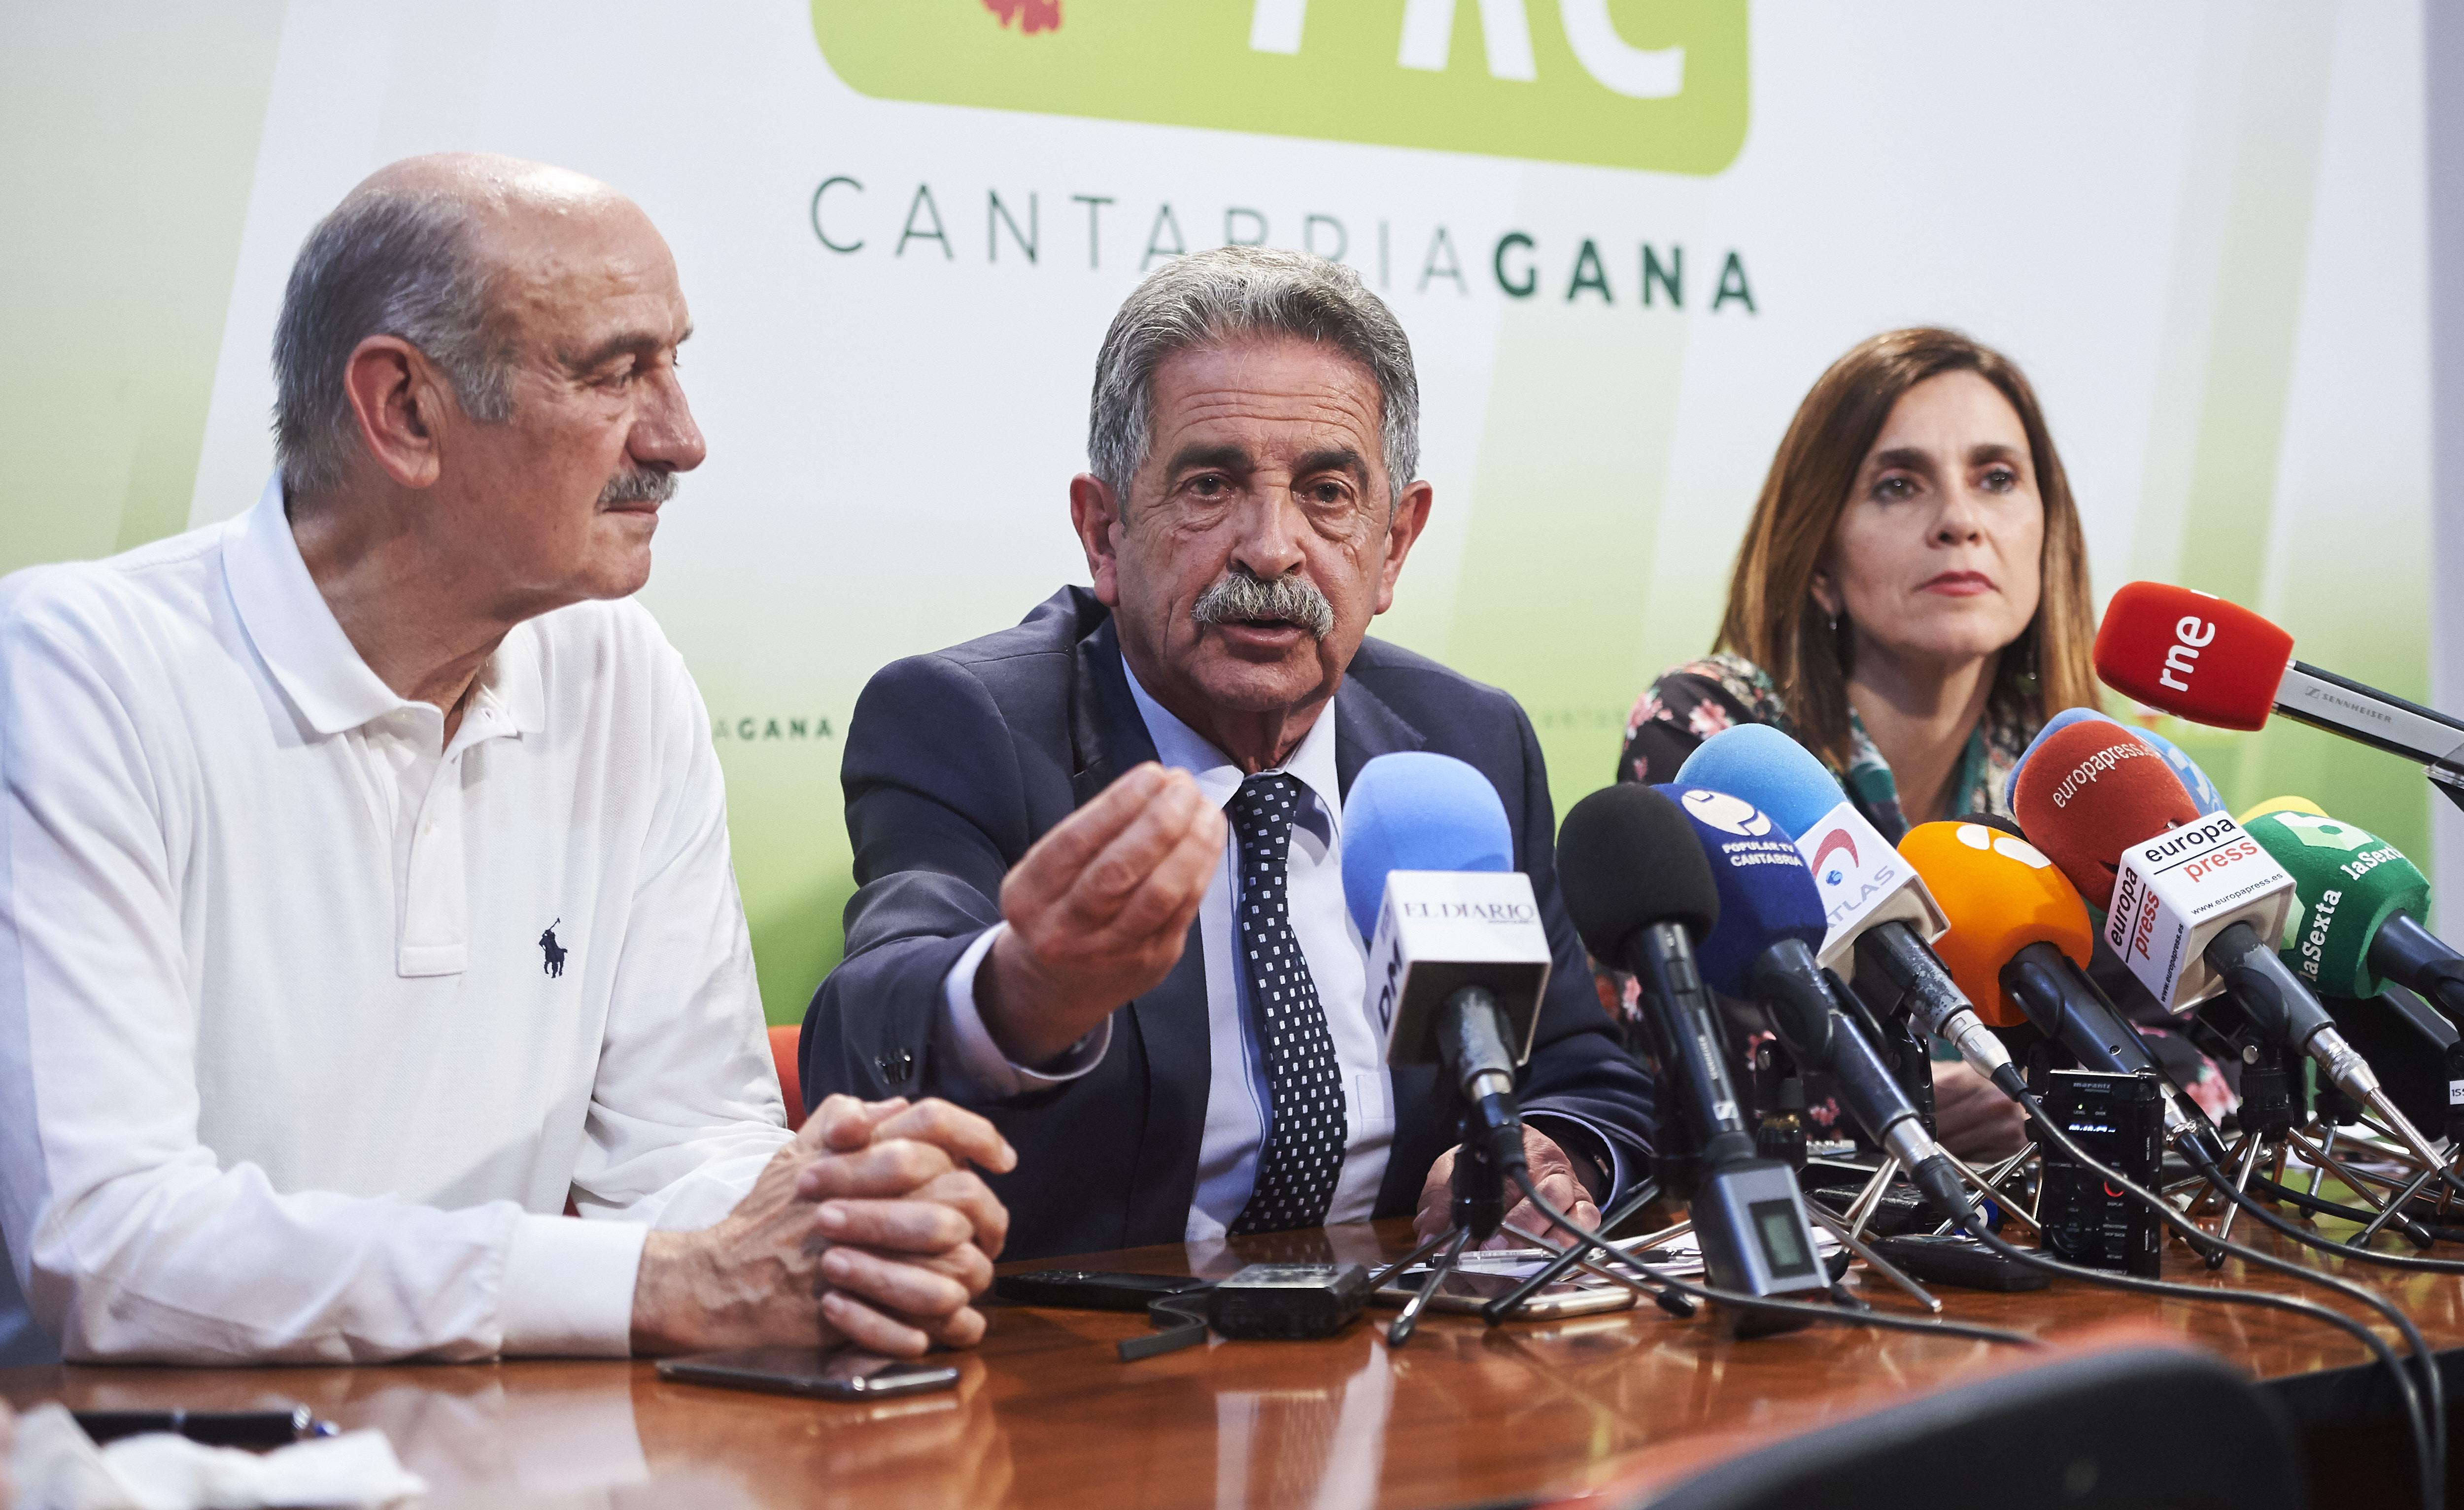 El diputado de PRC José María Mazón el candidato a la presidencia de Cantabria por el PRC Miguel Ángel Revilla.